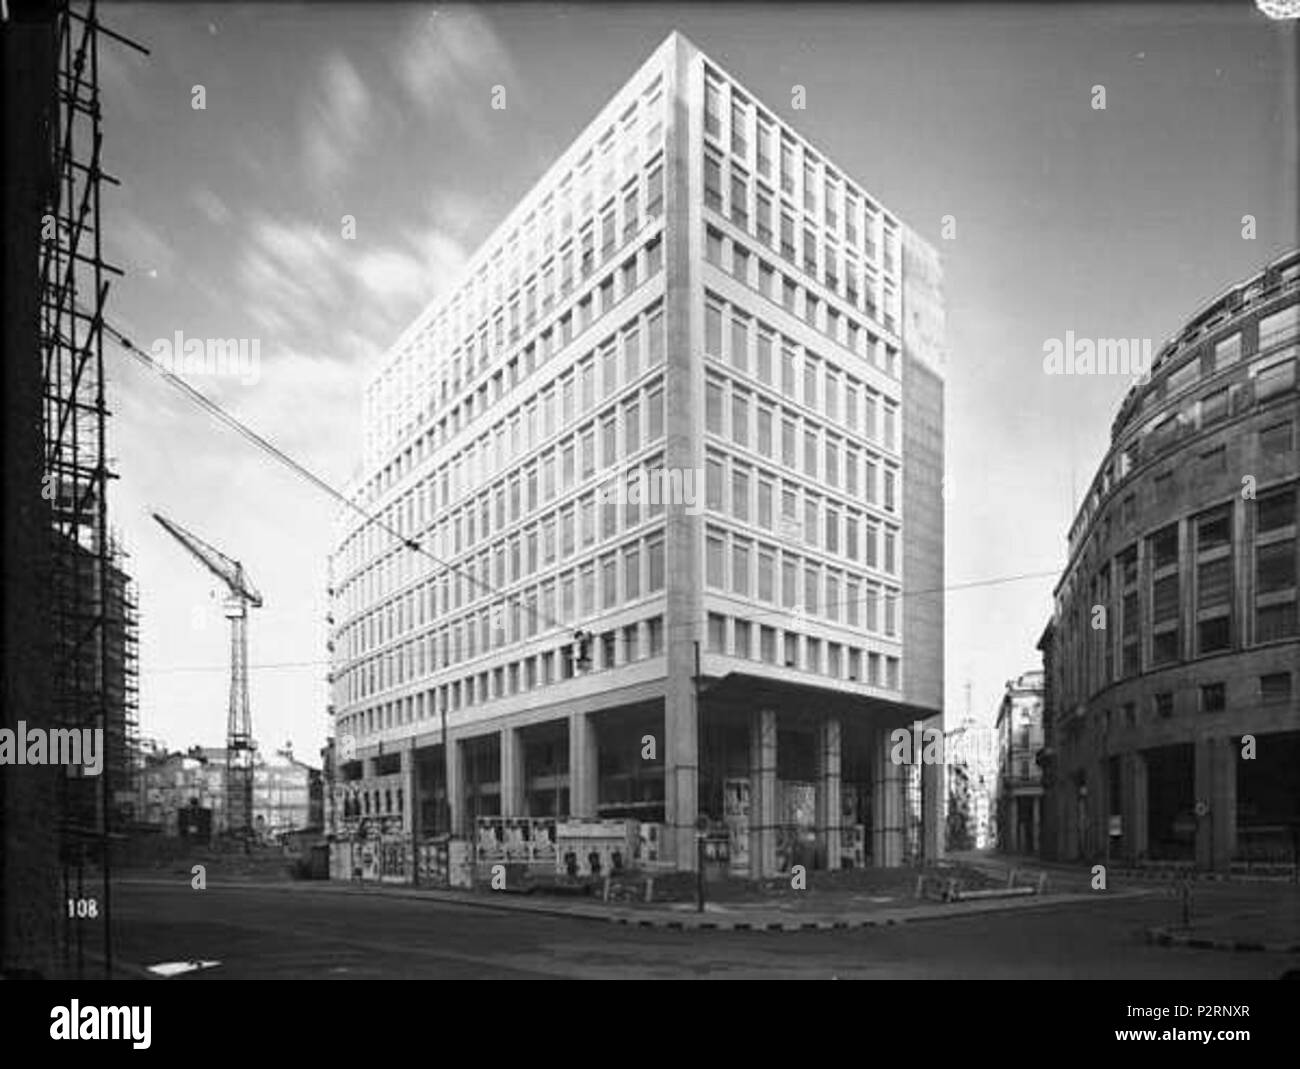 Italiano: Milano, edificio per uffici e negozi in Galleria Passarella 1-2  (angolo piazza San Babila, corso Vittorio Emanuele e corso Europa); fu  costruito dal 1954 al 1957 su progetto di Luigi